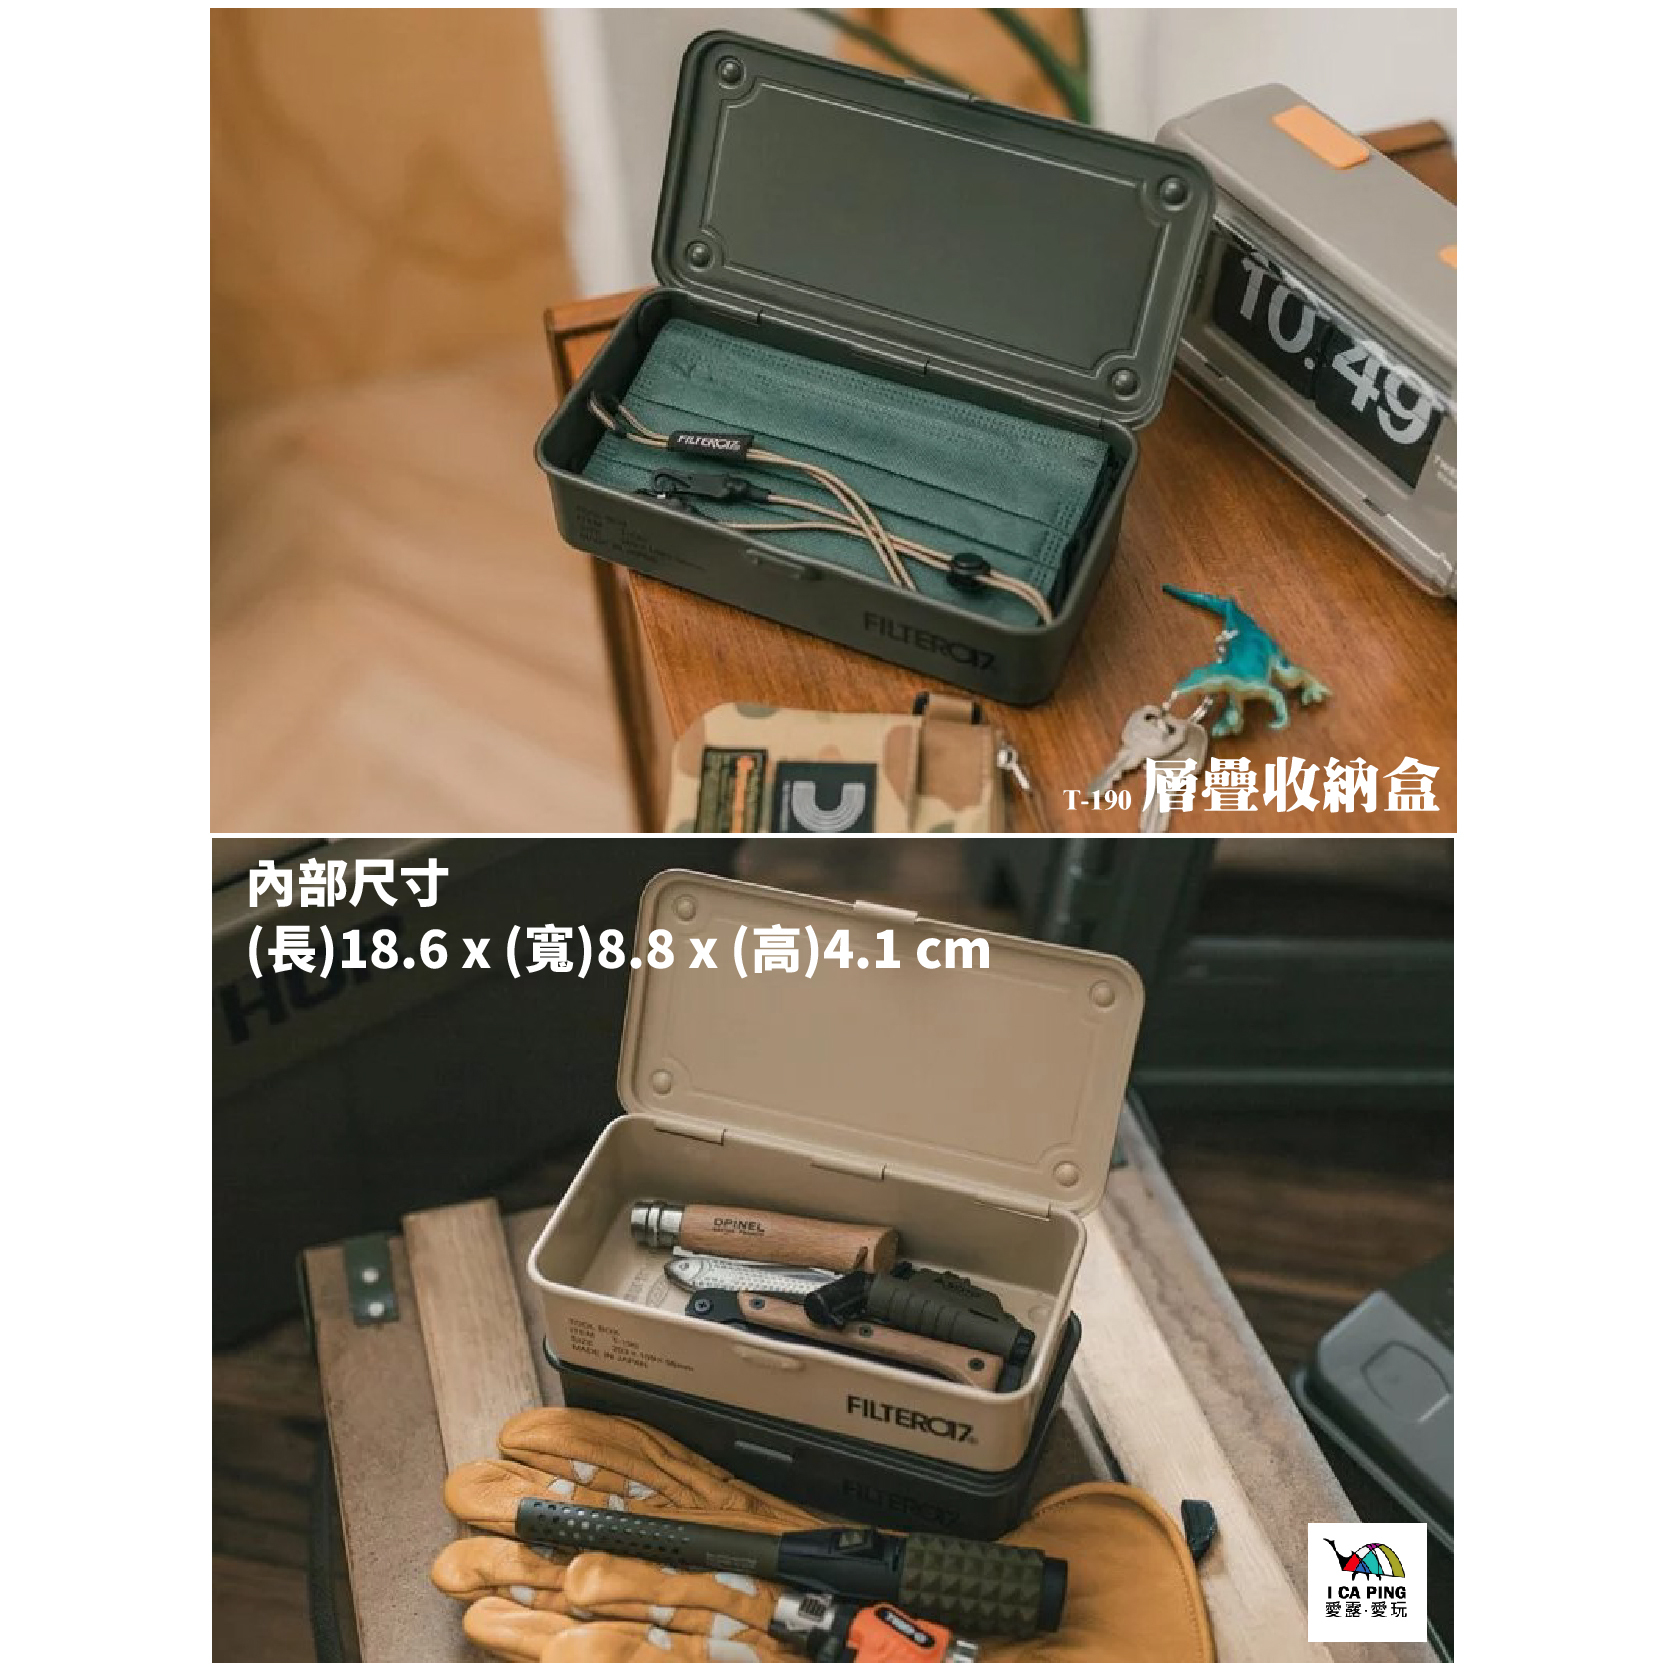 Filter017】x TOYO STEEL 日製工具手提箱Y-280、日製層疊收納盒T-190